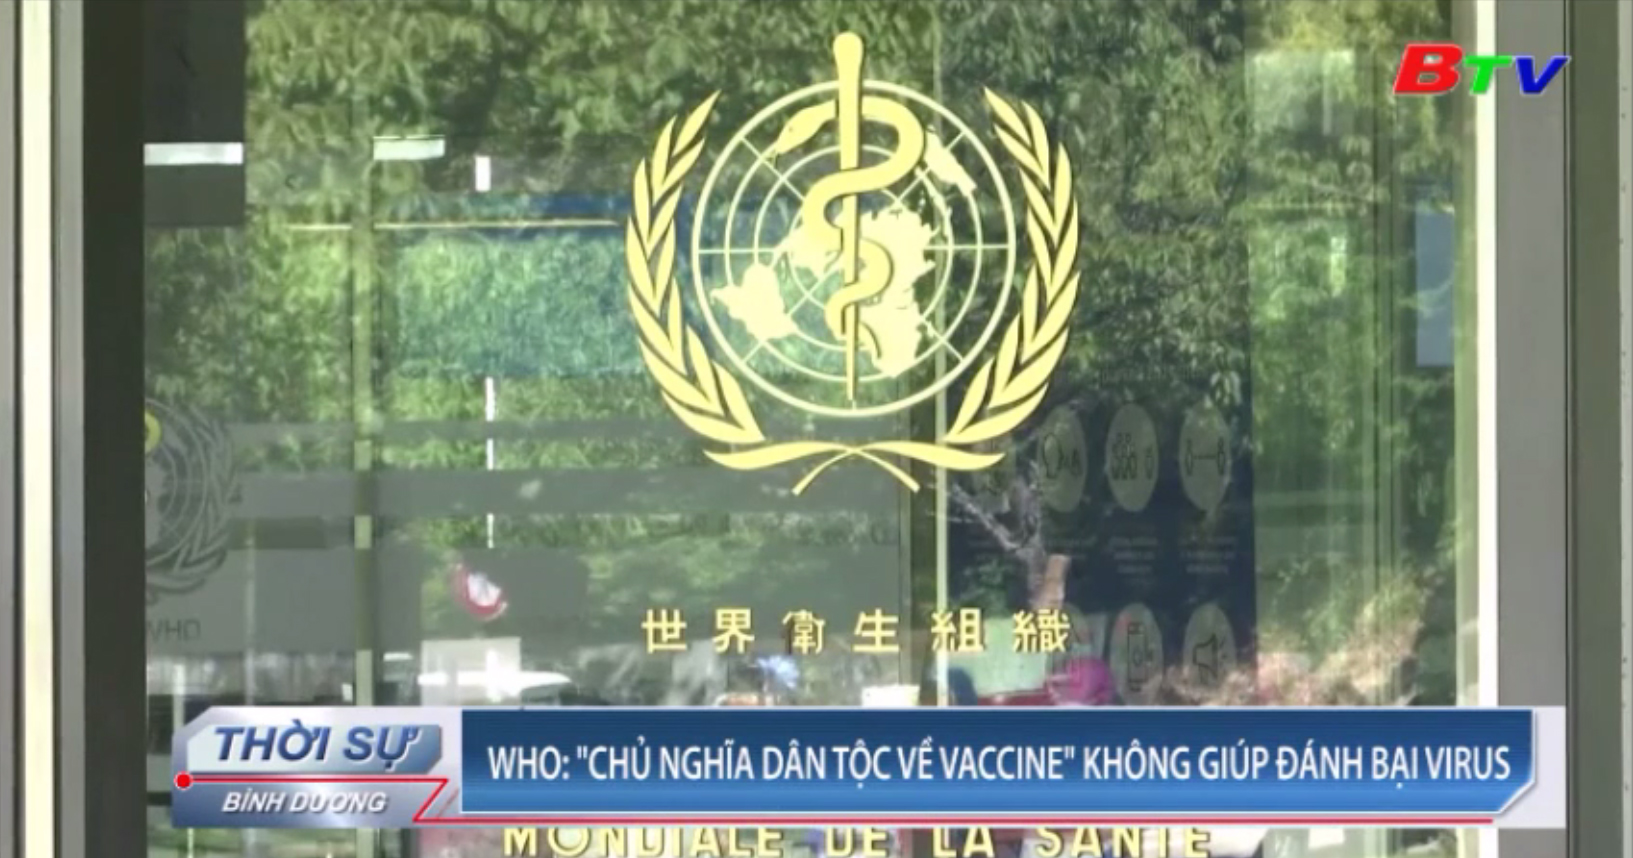 WHO - “Chủ nghĩa dân tộc về vaccine” không giúp đánh bại virus